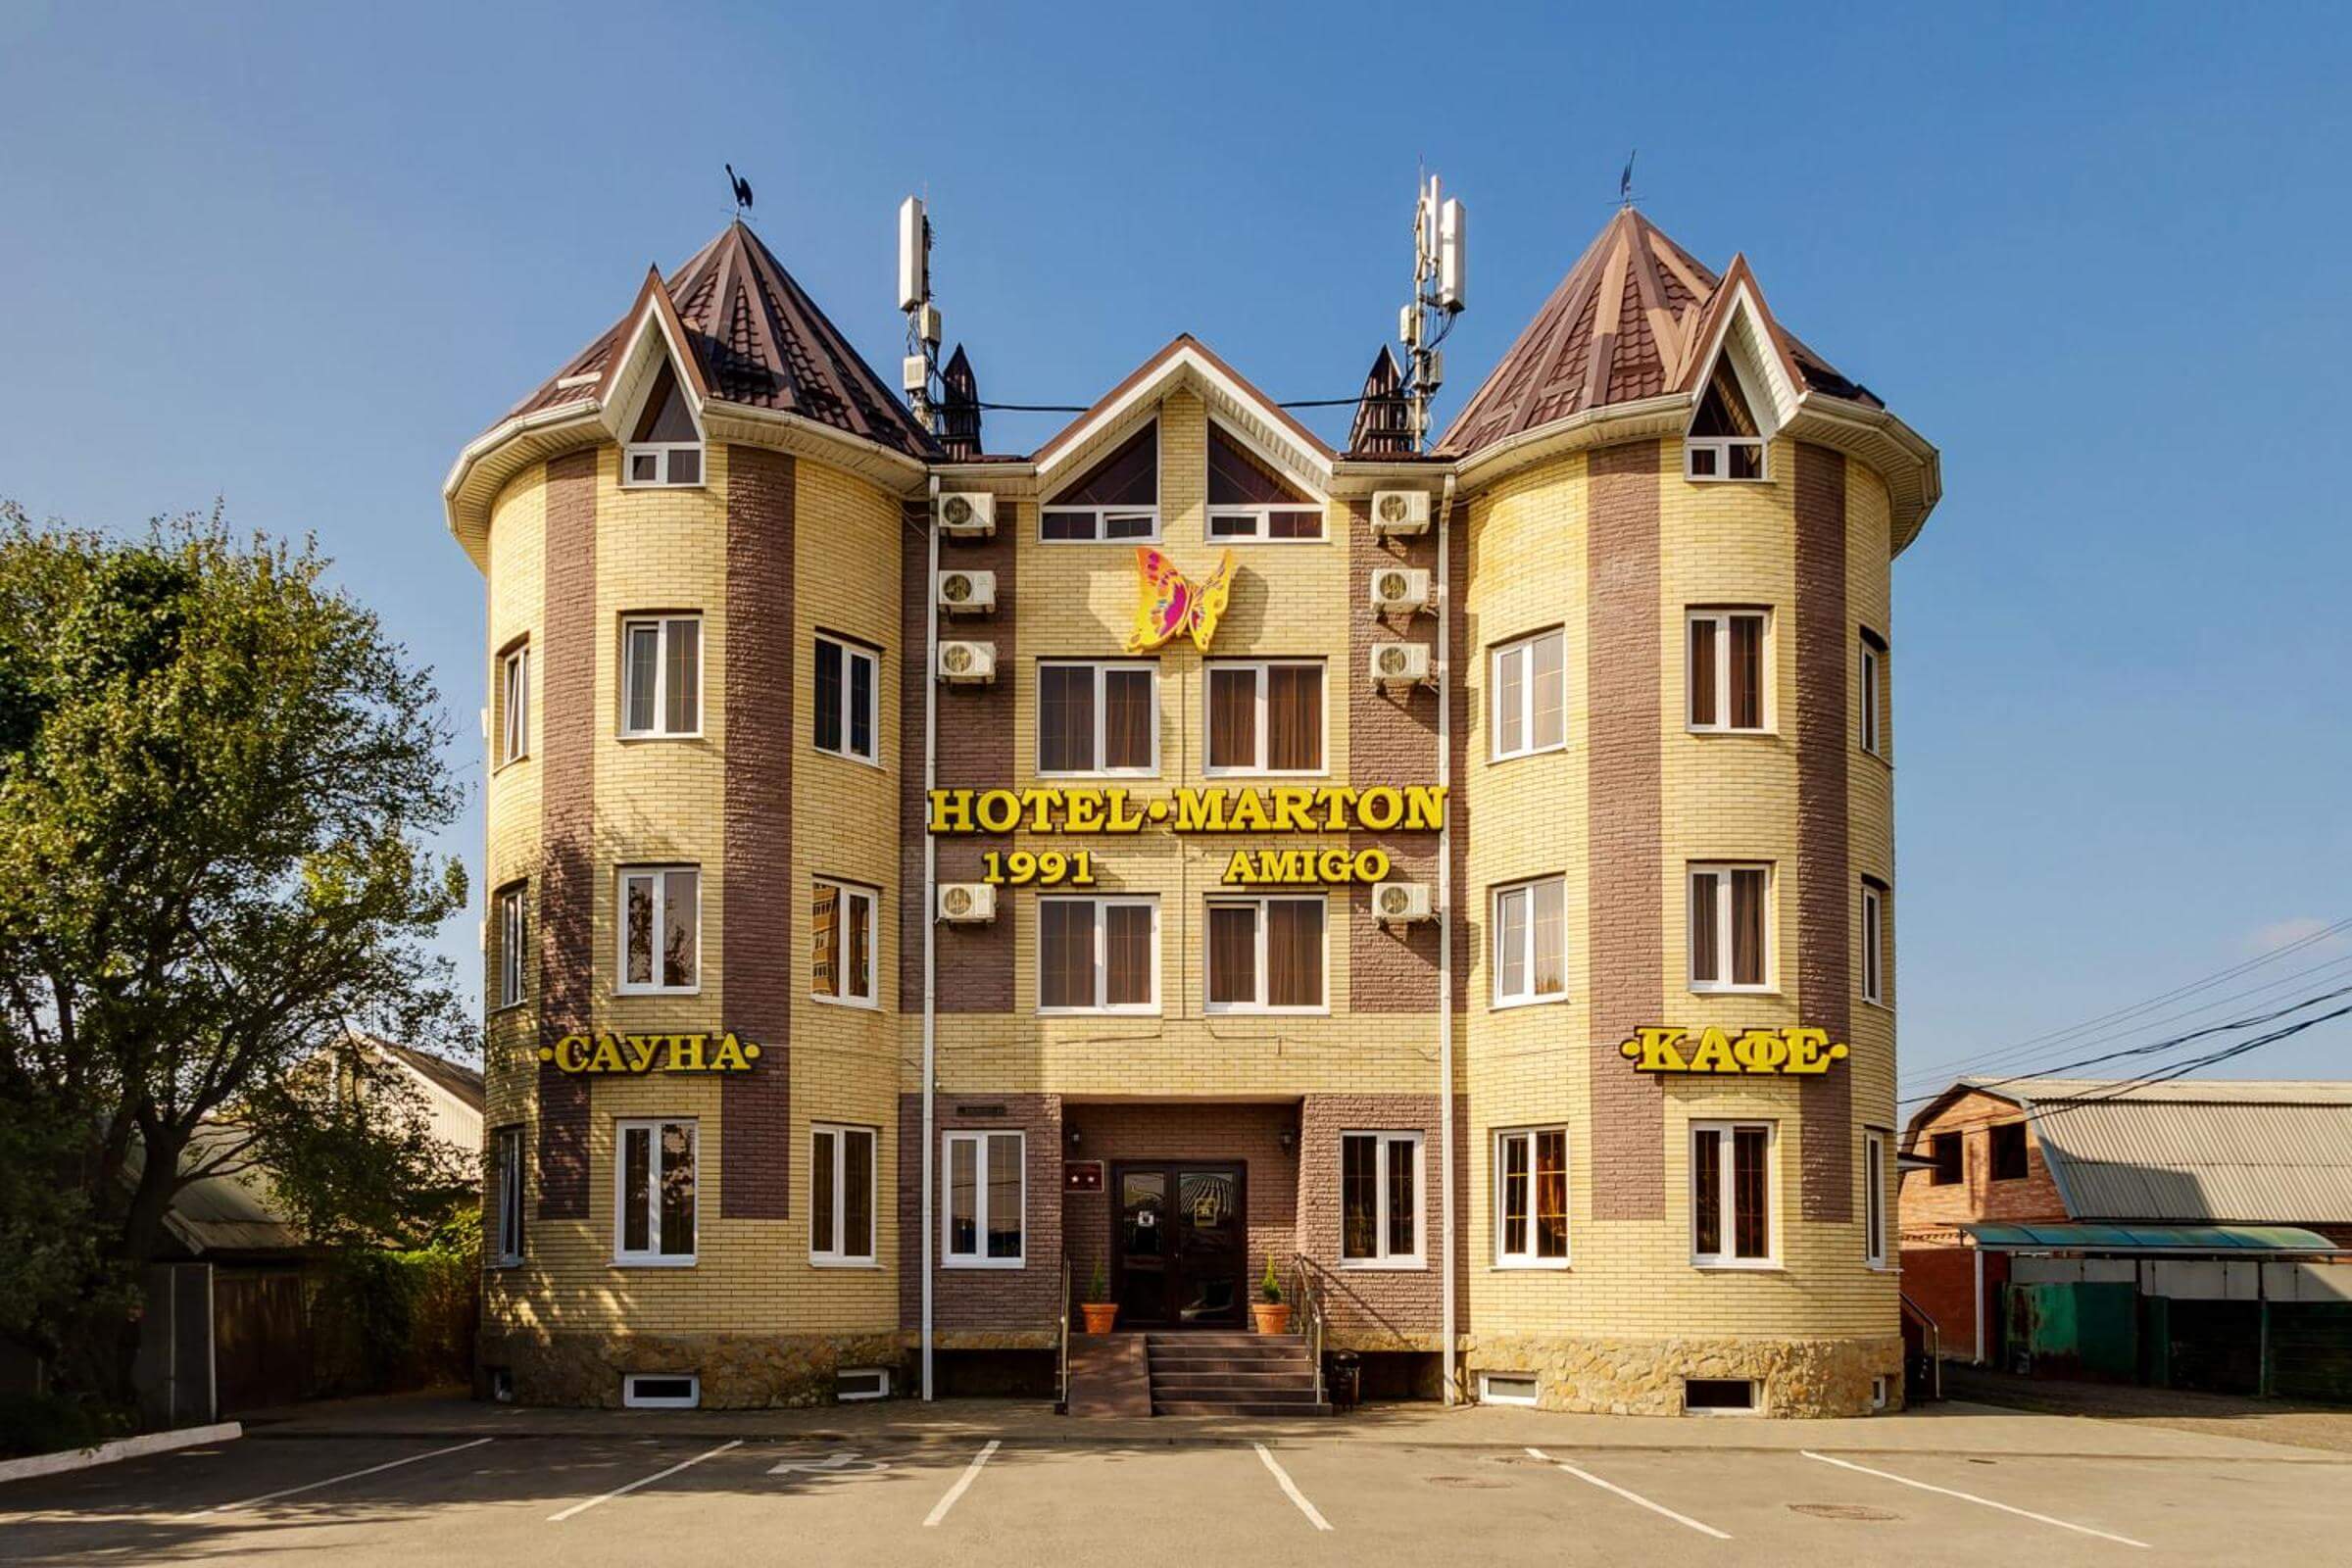 Здание отеля напоминает замок с башенками.